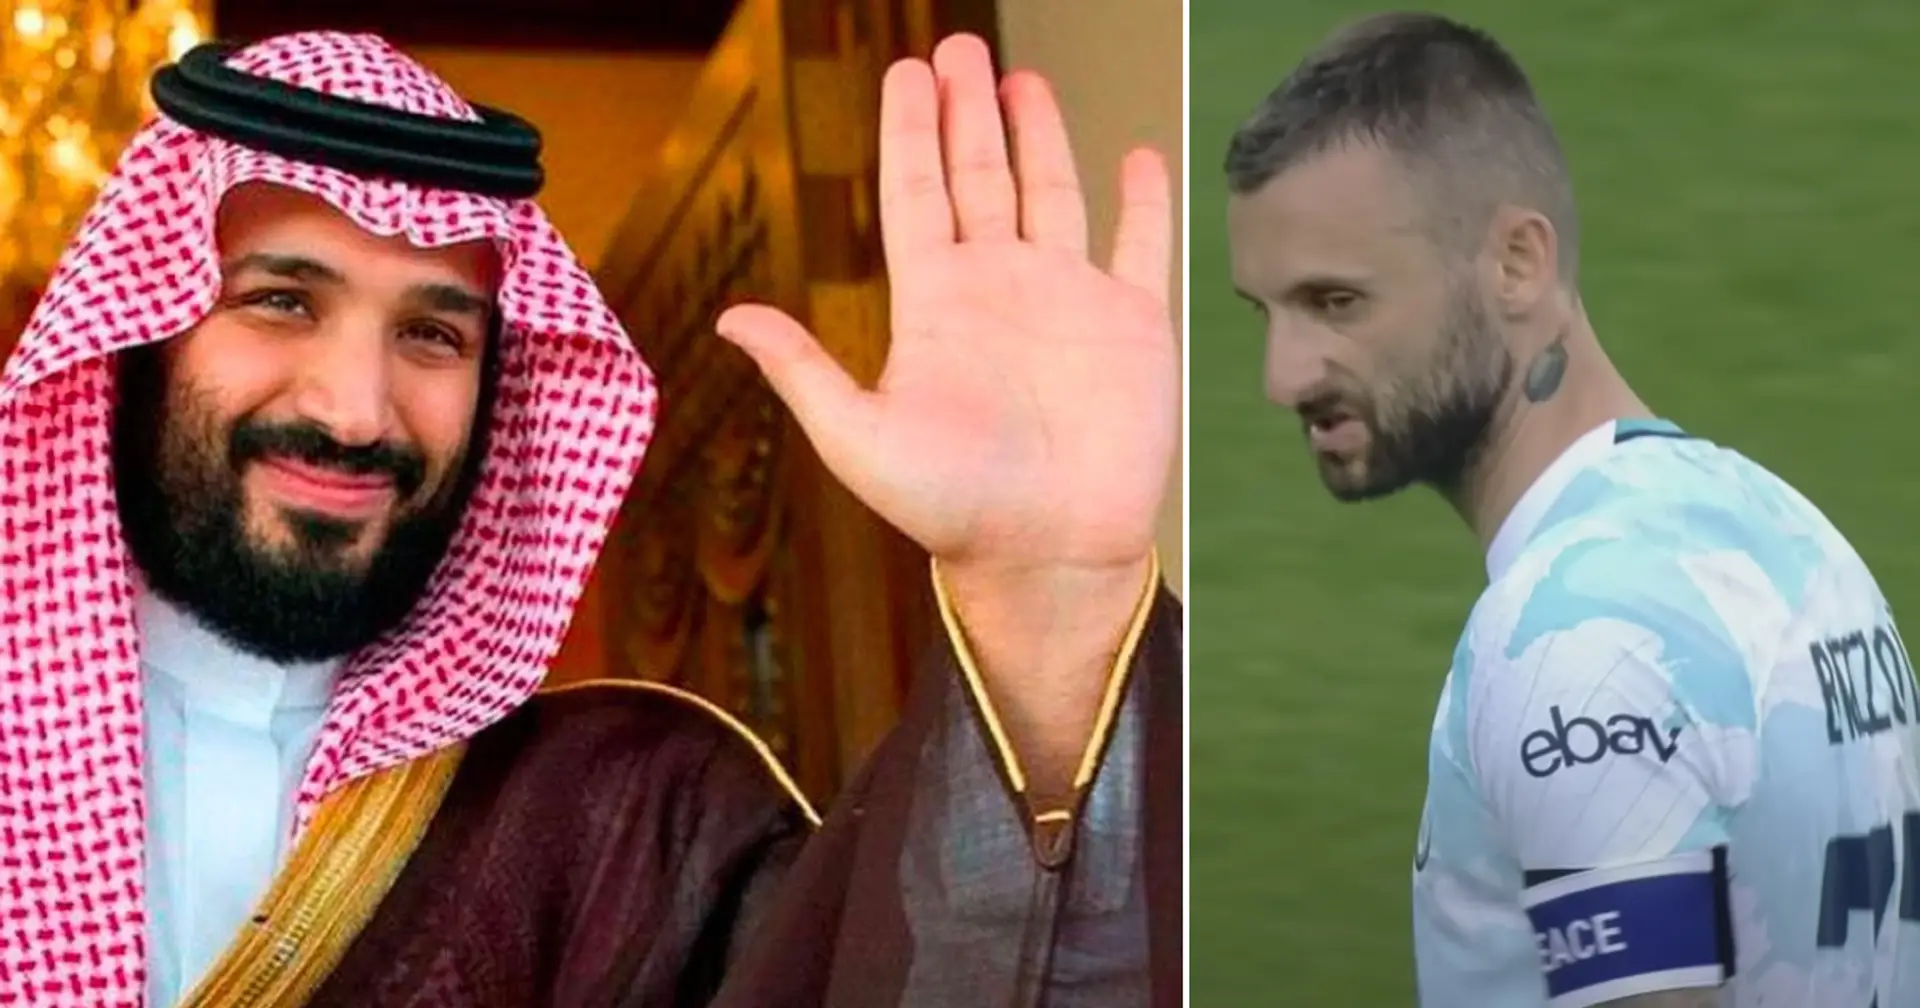 El Barça corre el riesgo de perderse a Brozovic, el centrocampista está 'cerca' de un acuerdo con Arabia Saudí (fiabilidad: 4 estrellas)